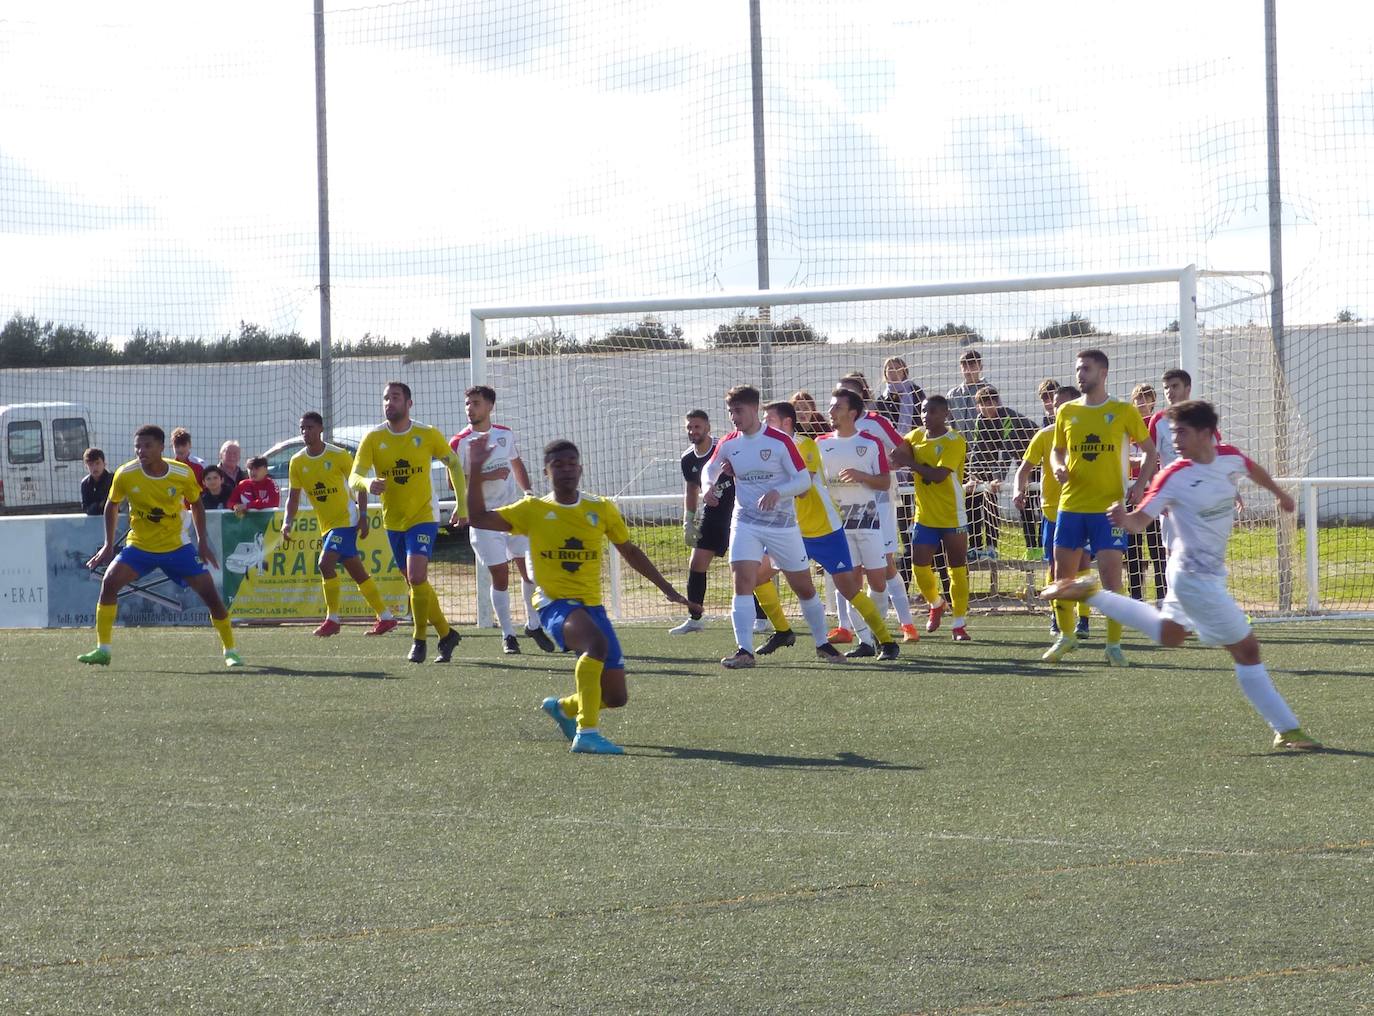 Cinco victorias, un empate y cinco derrotas, balance de los equipos del CD Castuera en la última jornada de competición liguera